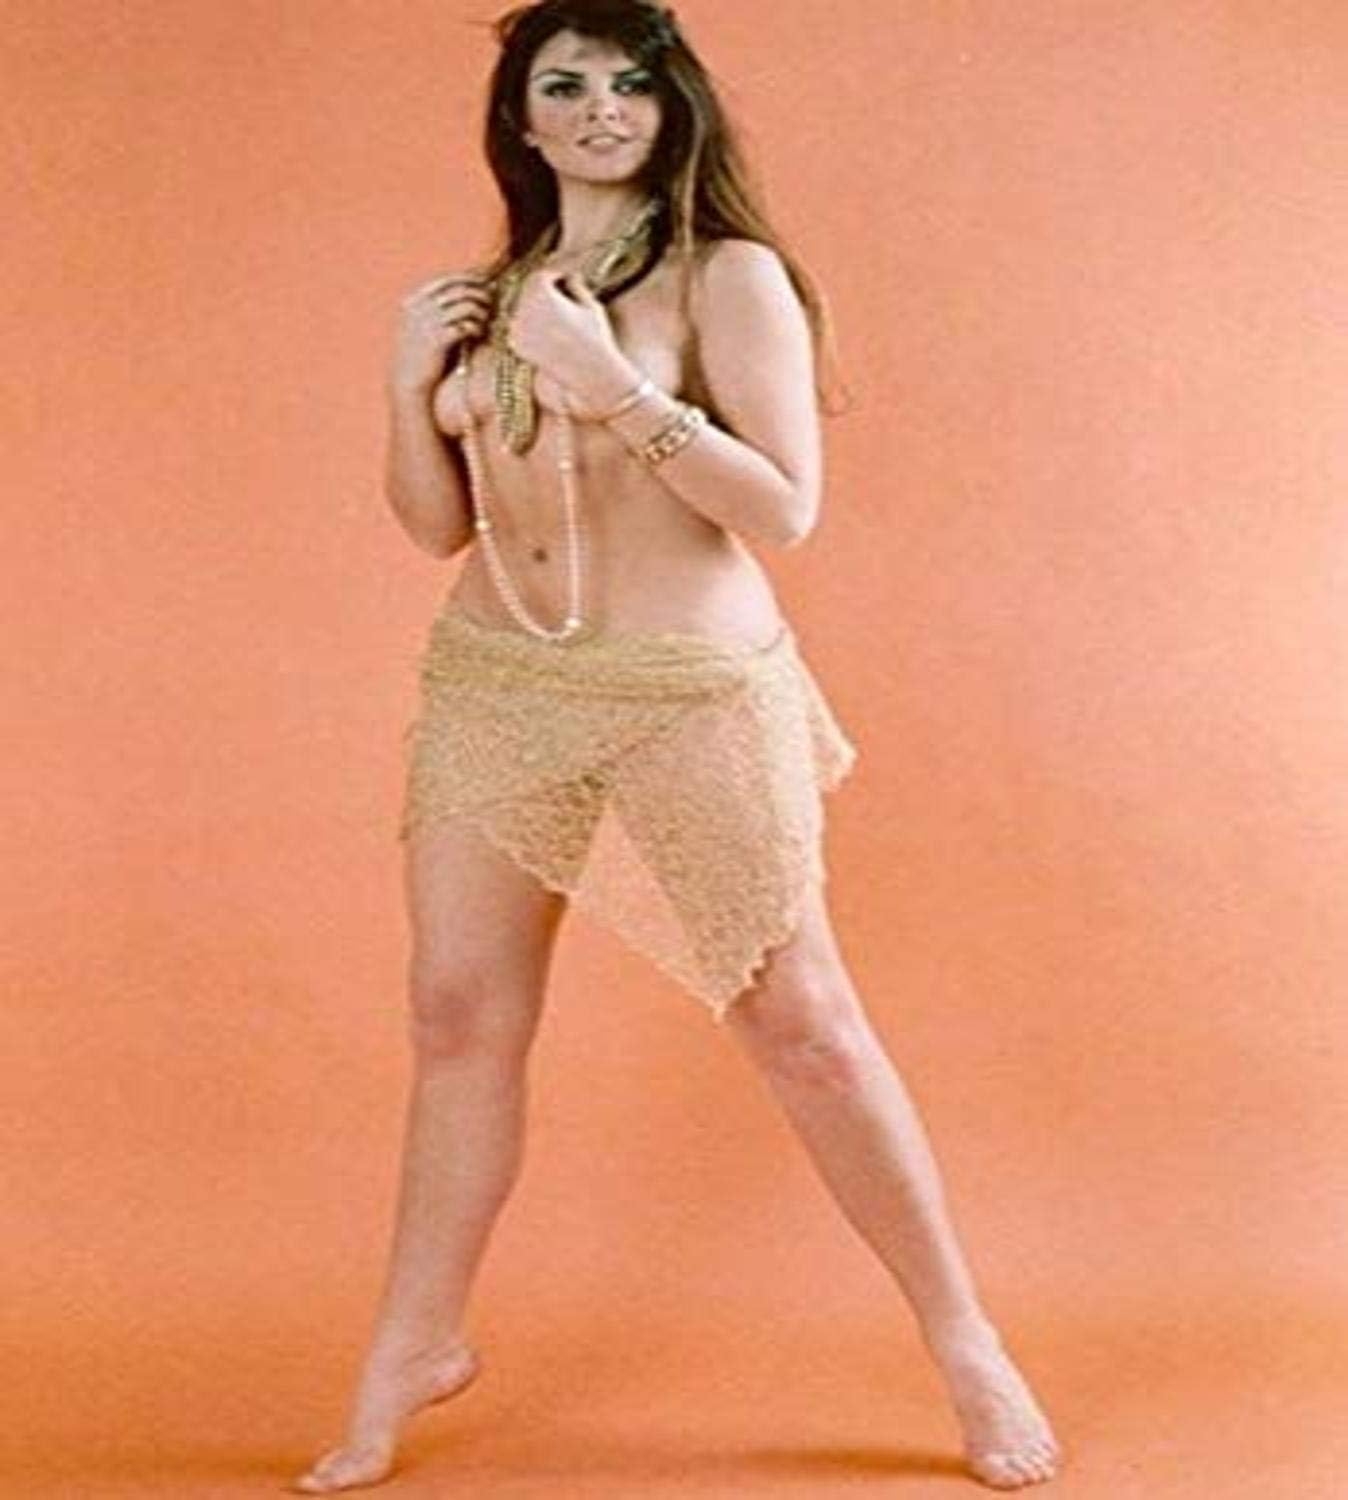 Posterazzi DAP14676 Caroline Munro – Nude with Skirt Photo Print, 8 x 10, Multi   price checker   price checker Description